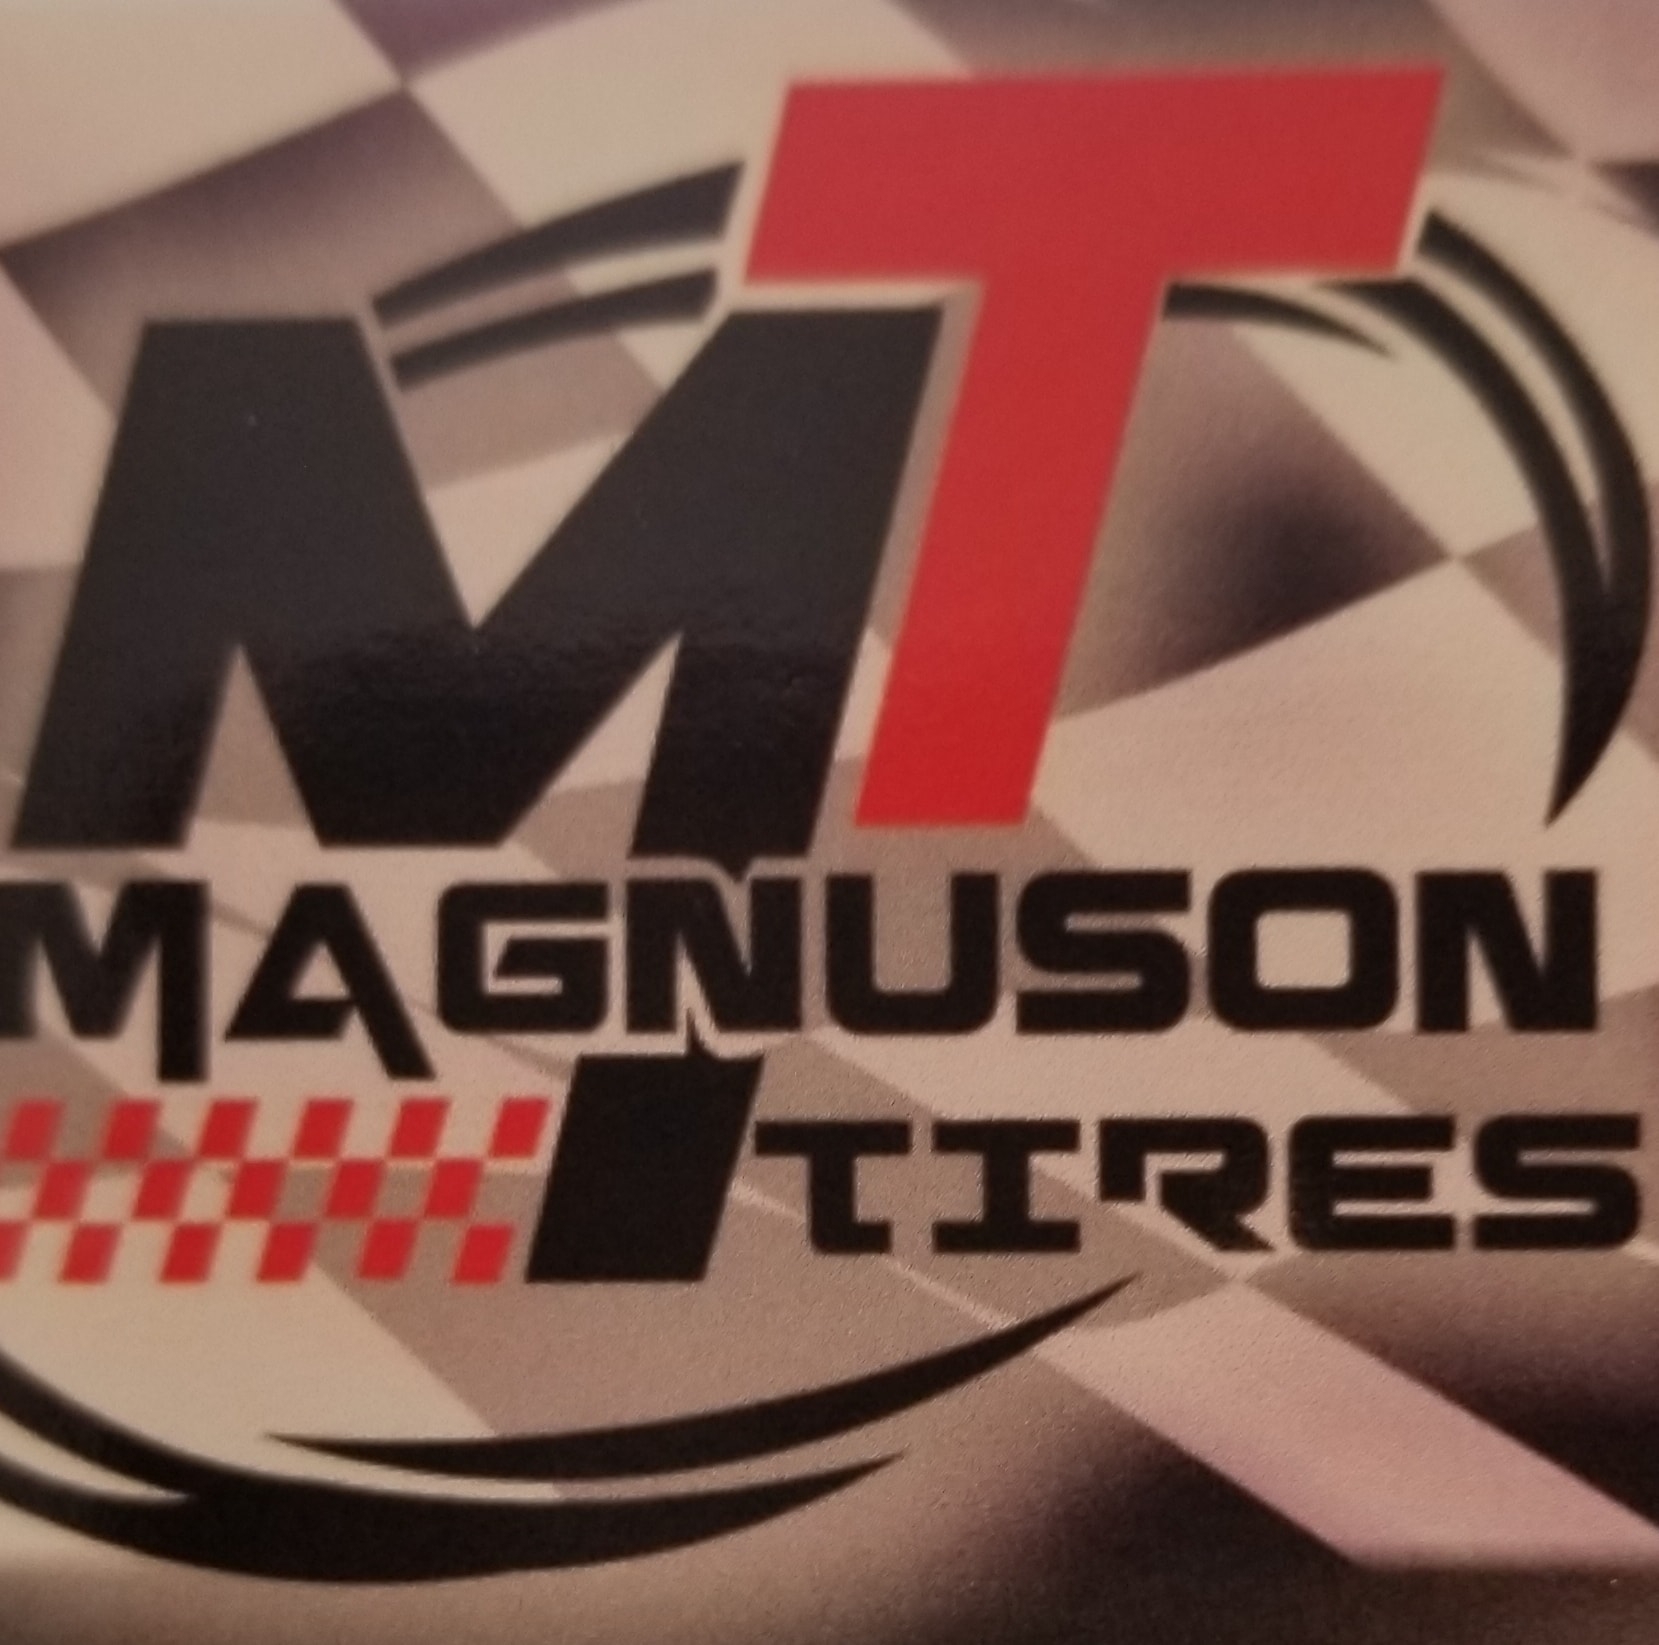 Magnuson Tire & Auto Service Inc